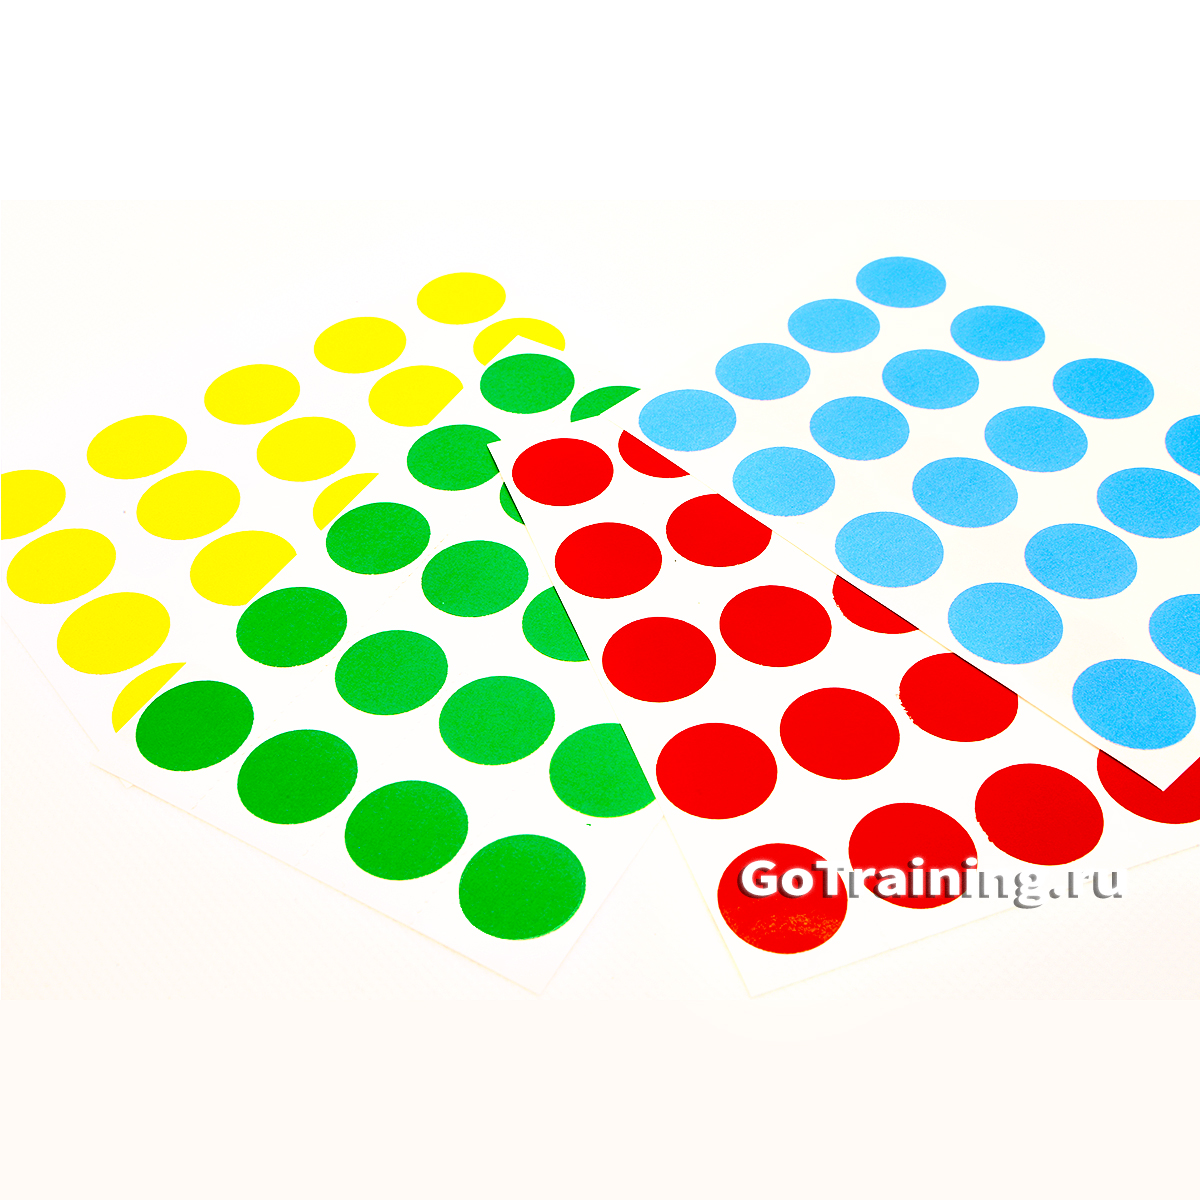 Метки для голосования в наборе (красный, зеленый, желтый, голубой)